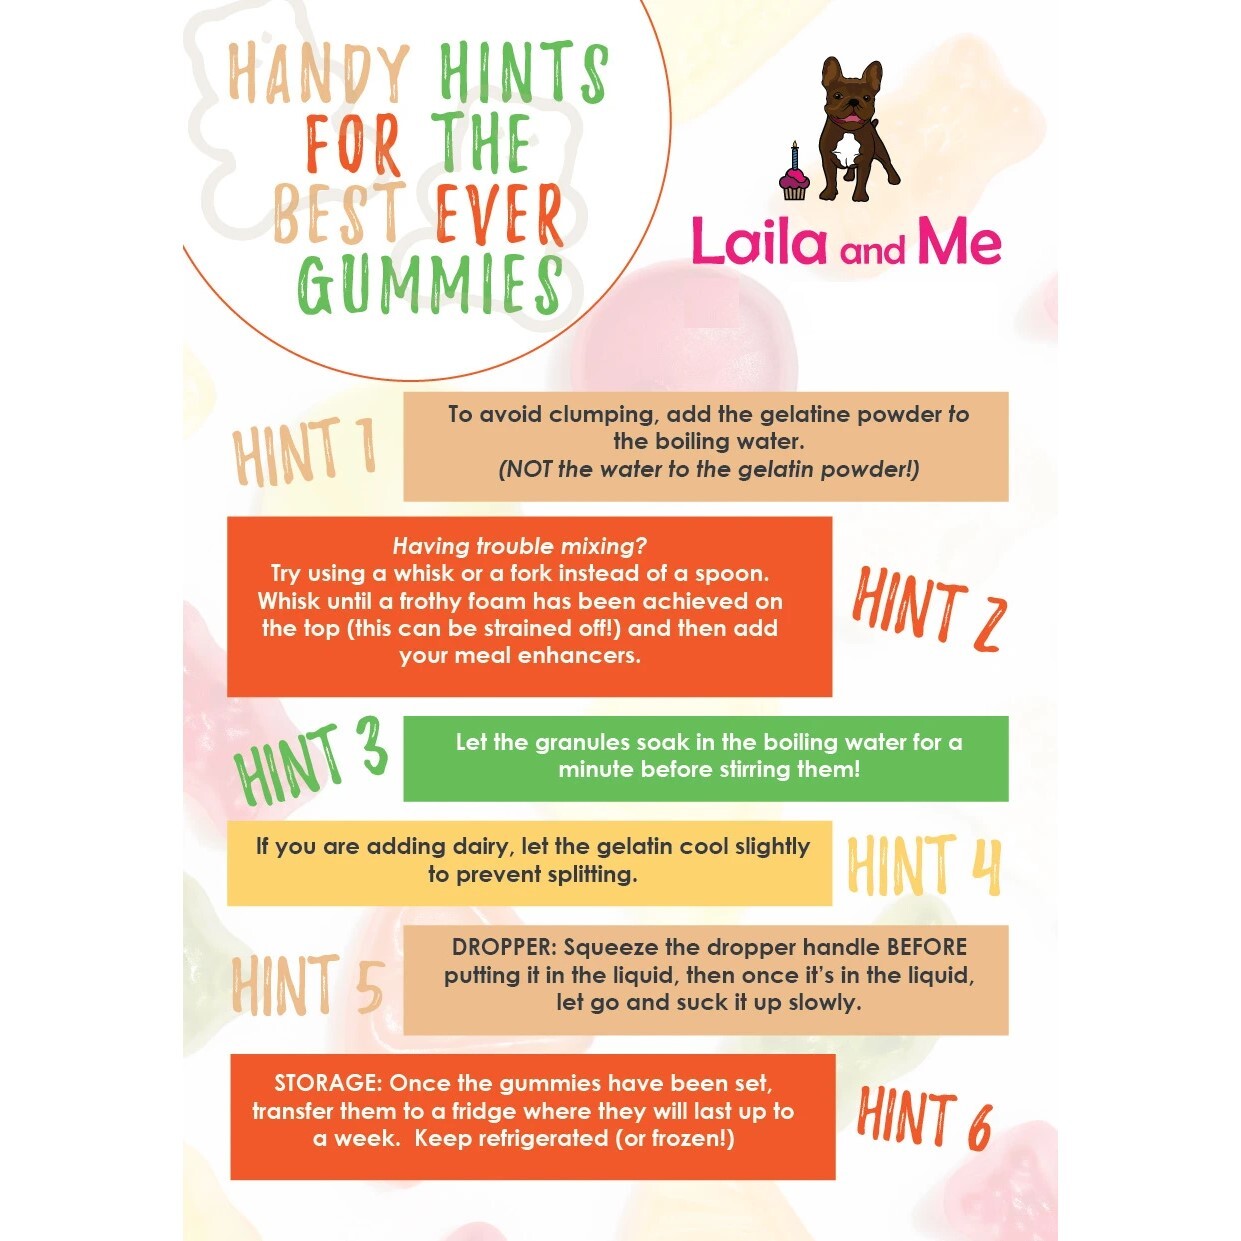 Laila & Me DIY Probiotic Gummi Mix Powder  |  Dog Treats